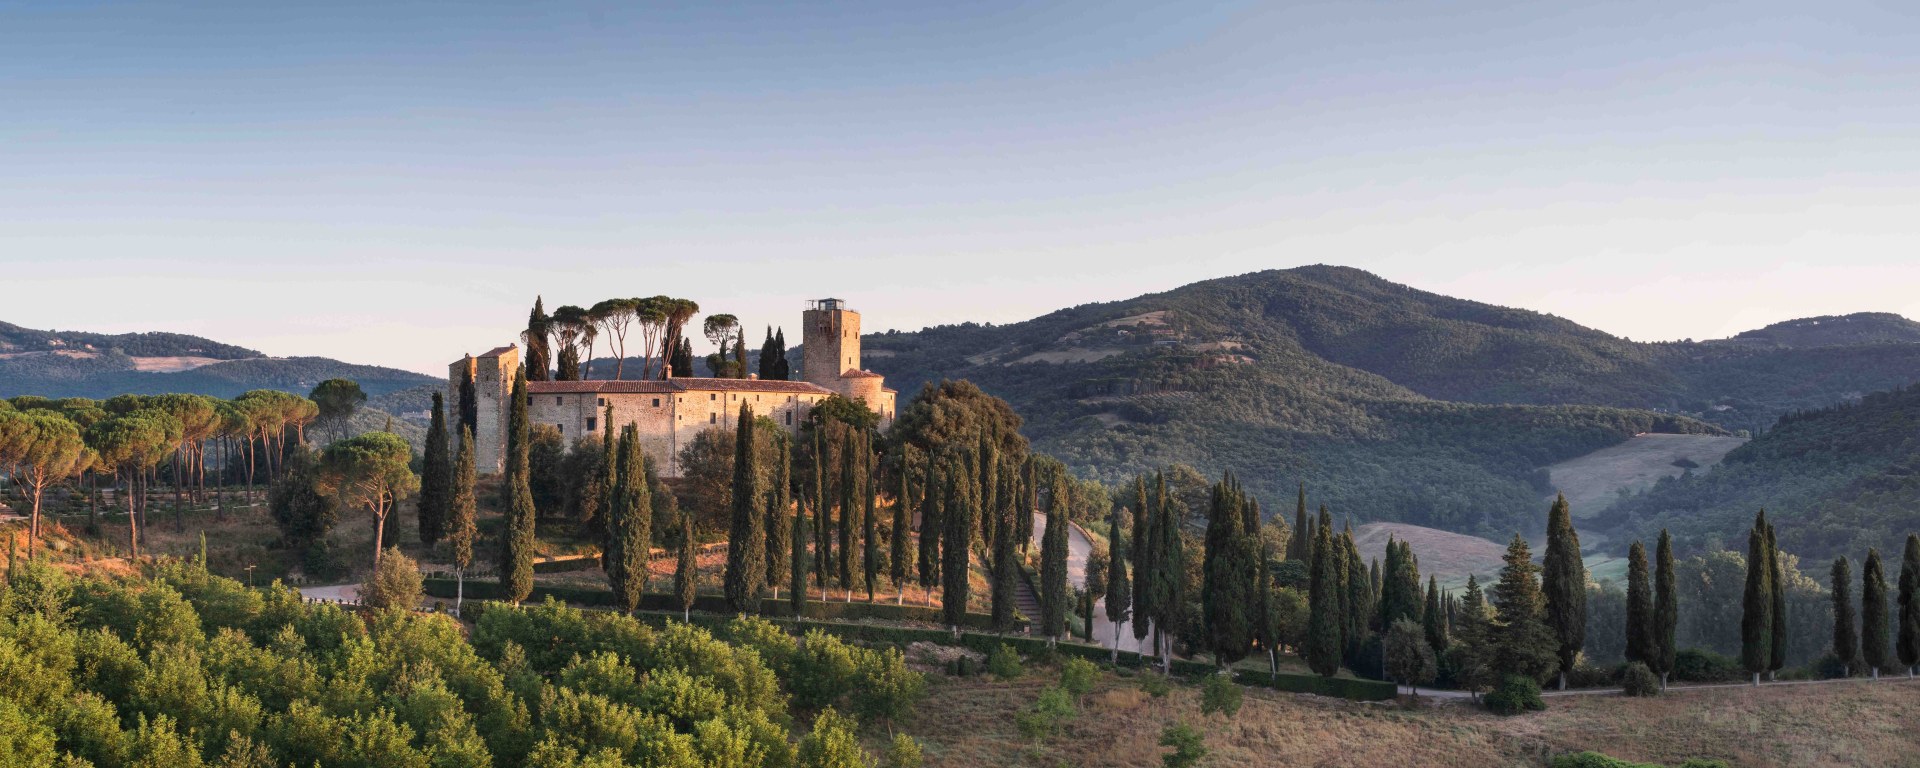 Luxushotelneueroeffnung Italien Castello Di Reschio